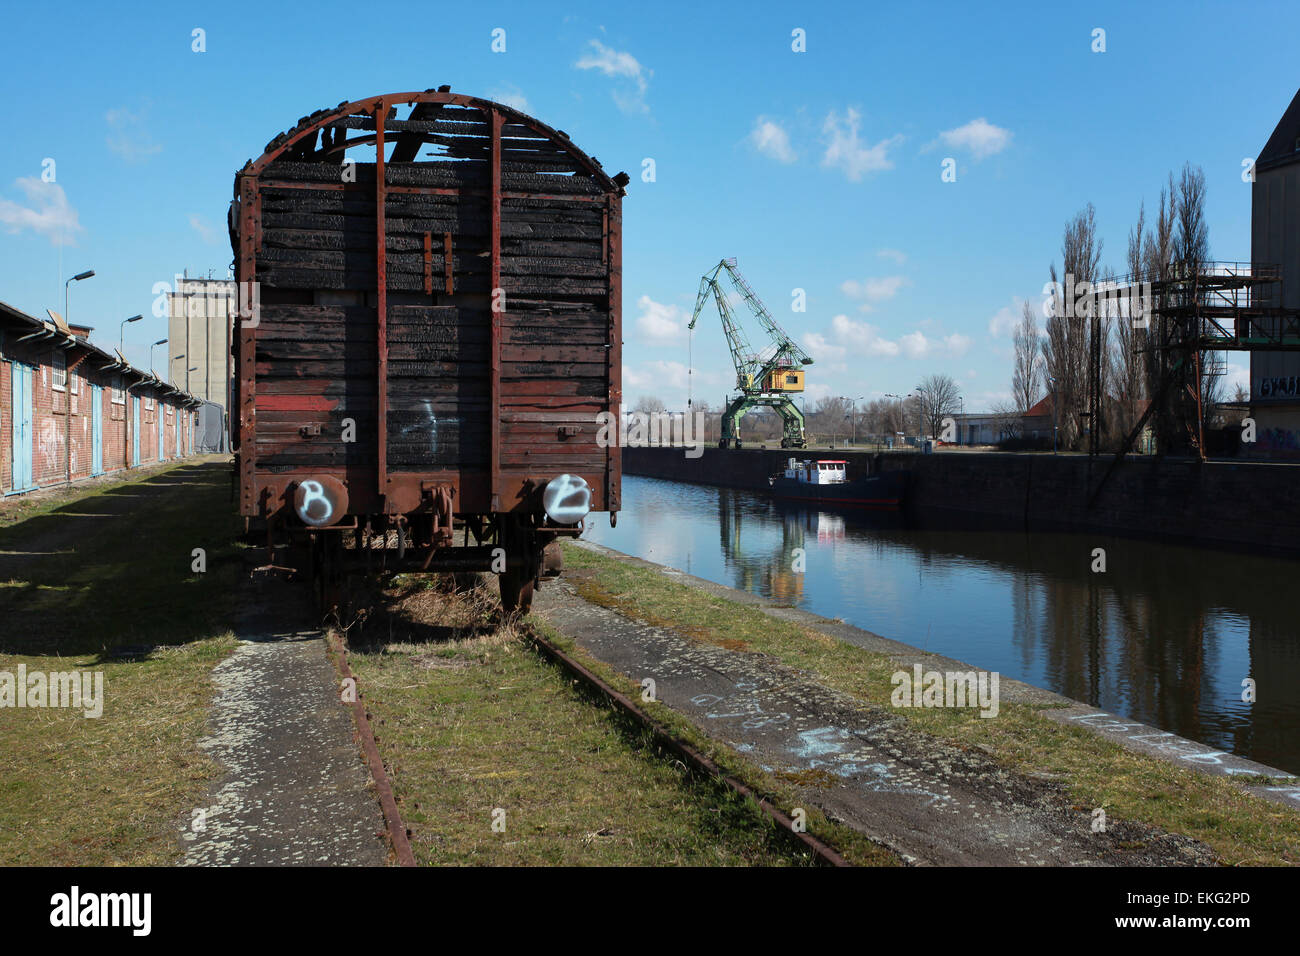 Un vieux wagon exposées du quai municipal de fer dans l'ancien port commercial. Magdeburg, Neustadt, Allemagne. Banque D'Images